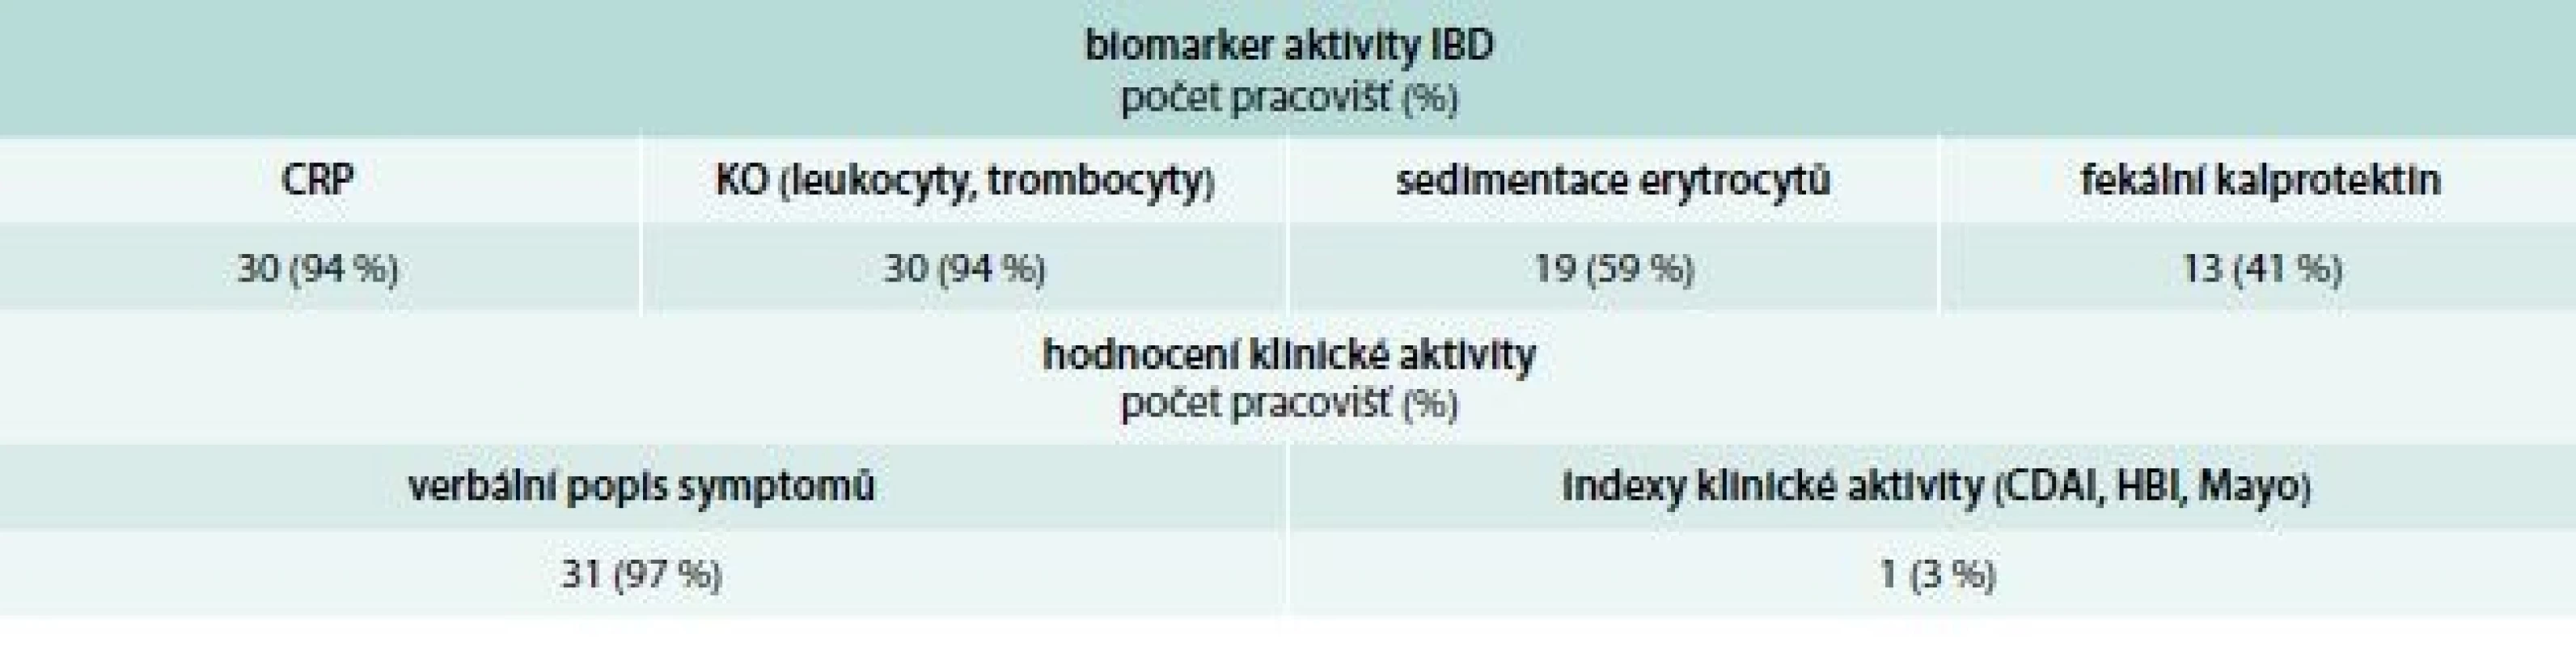 Biomarkery aktivity IBD a hodnocení symptomů